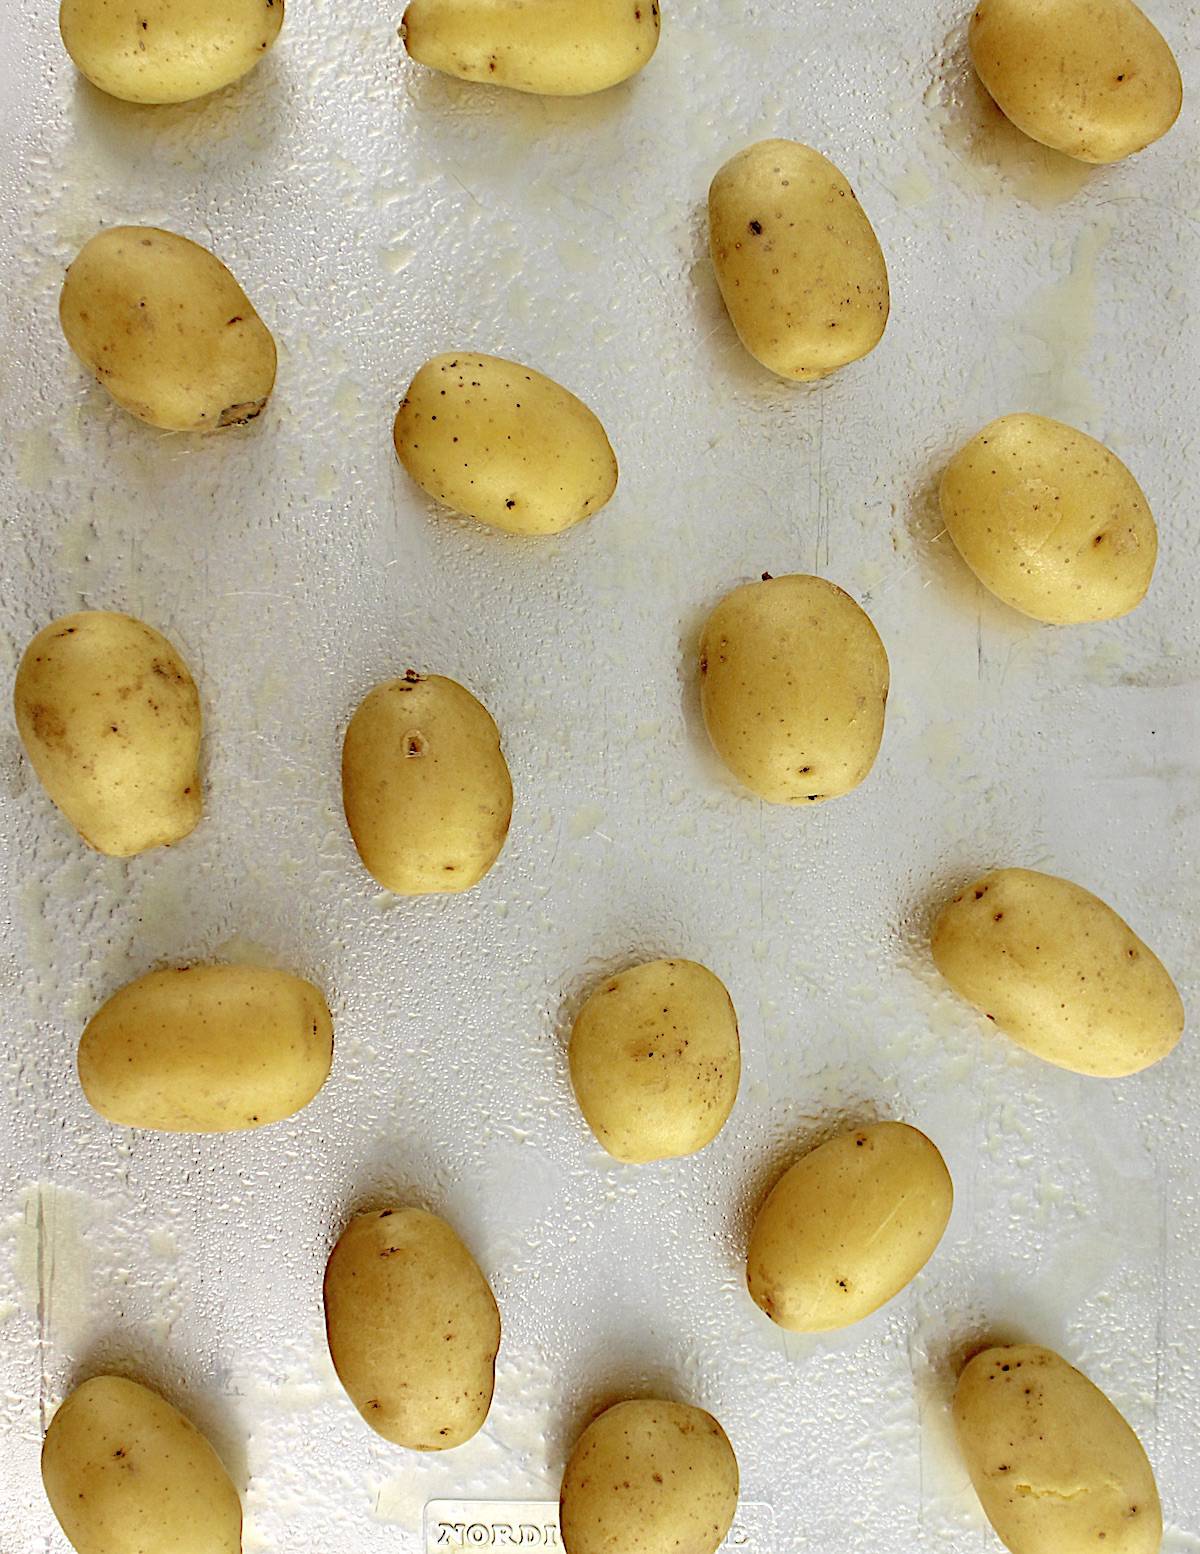 Cooked baby yukon gold potatoes on baking sheet